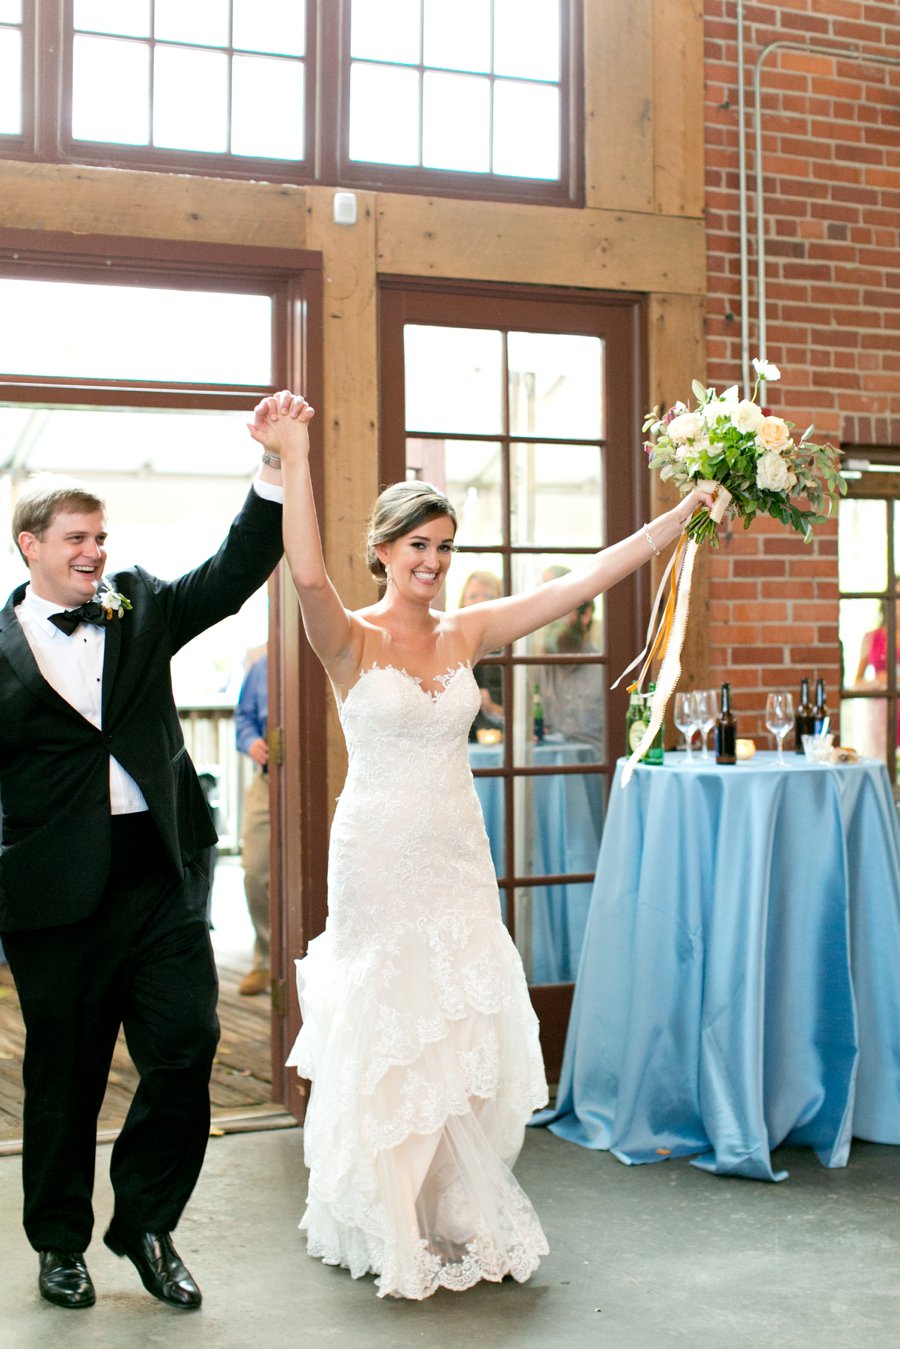 A Charming Blue & White South Carolina Wedding via TheELD.com